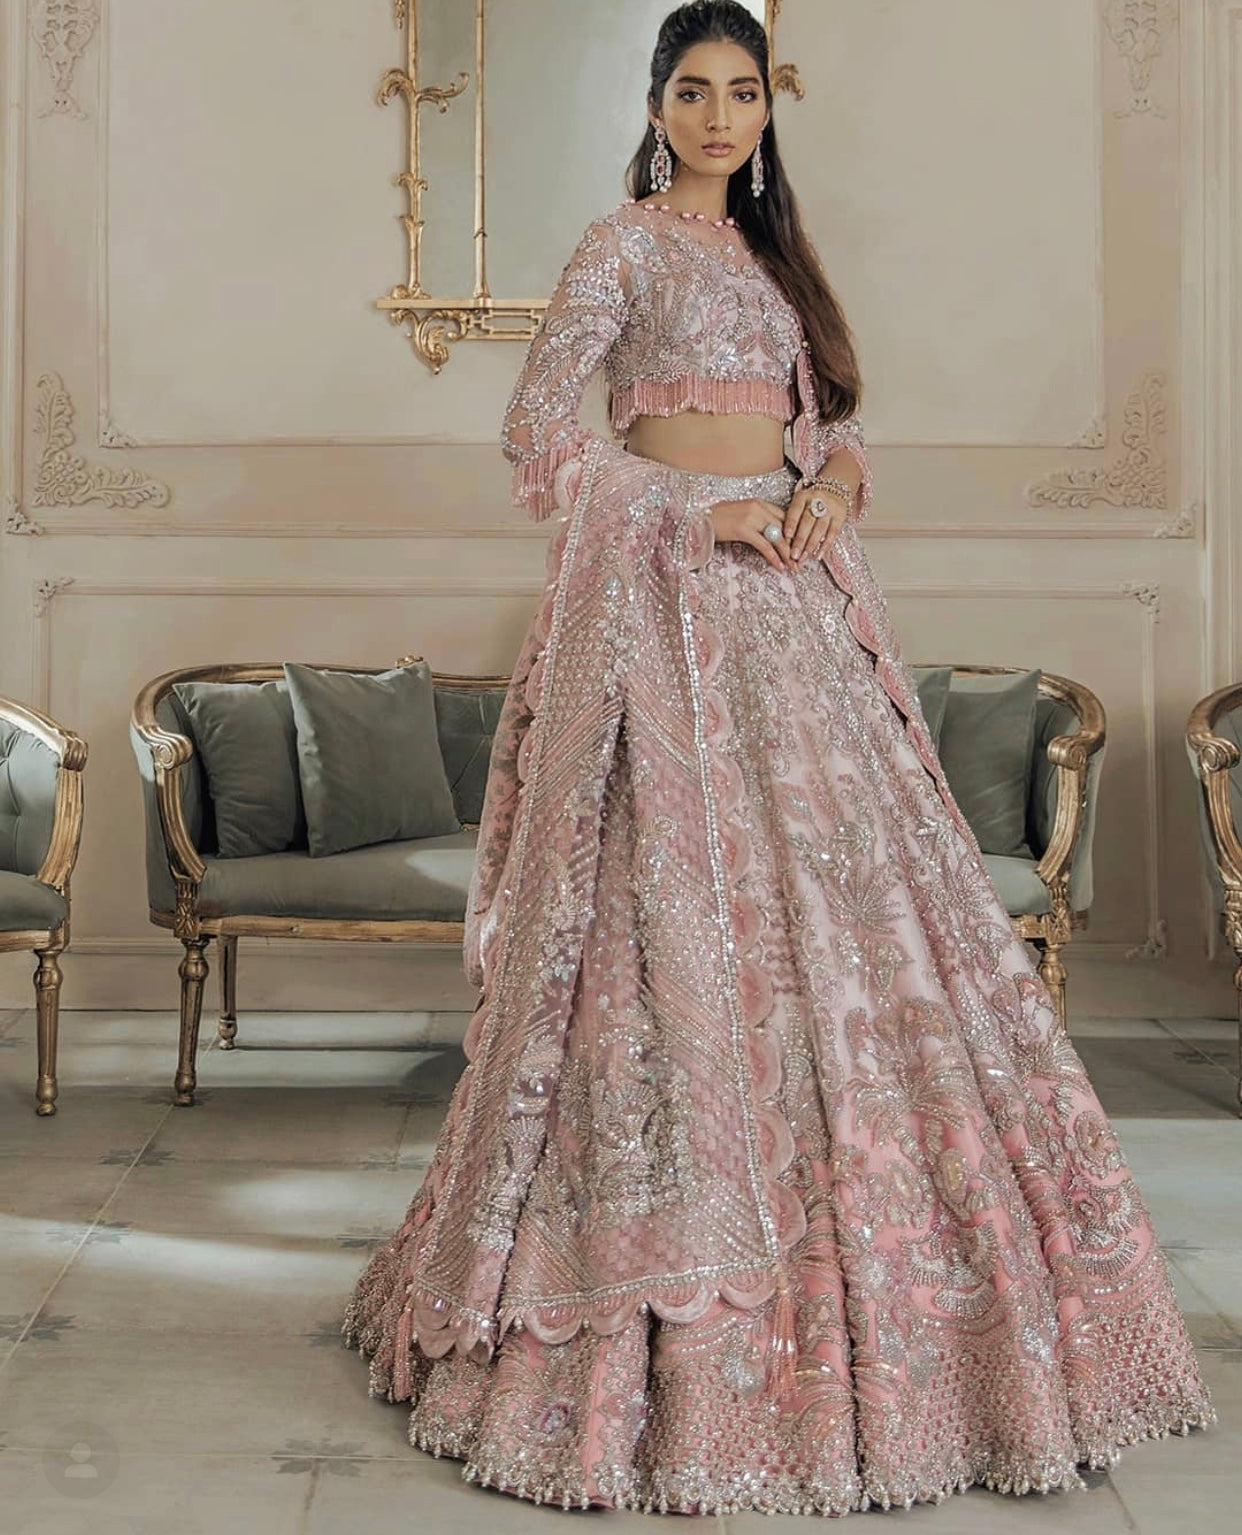 Discover 155+ pakistani lehenga dress